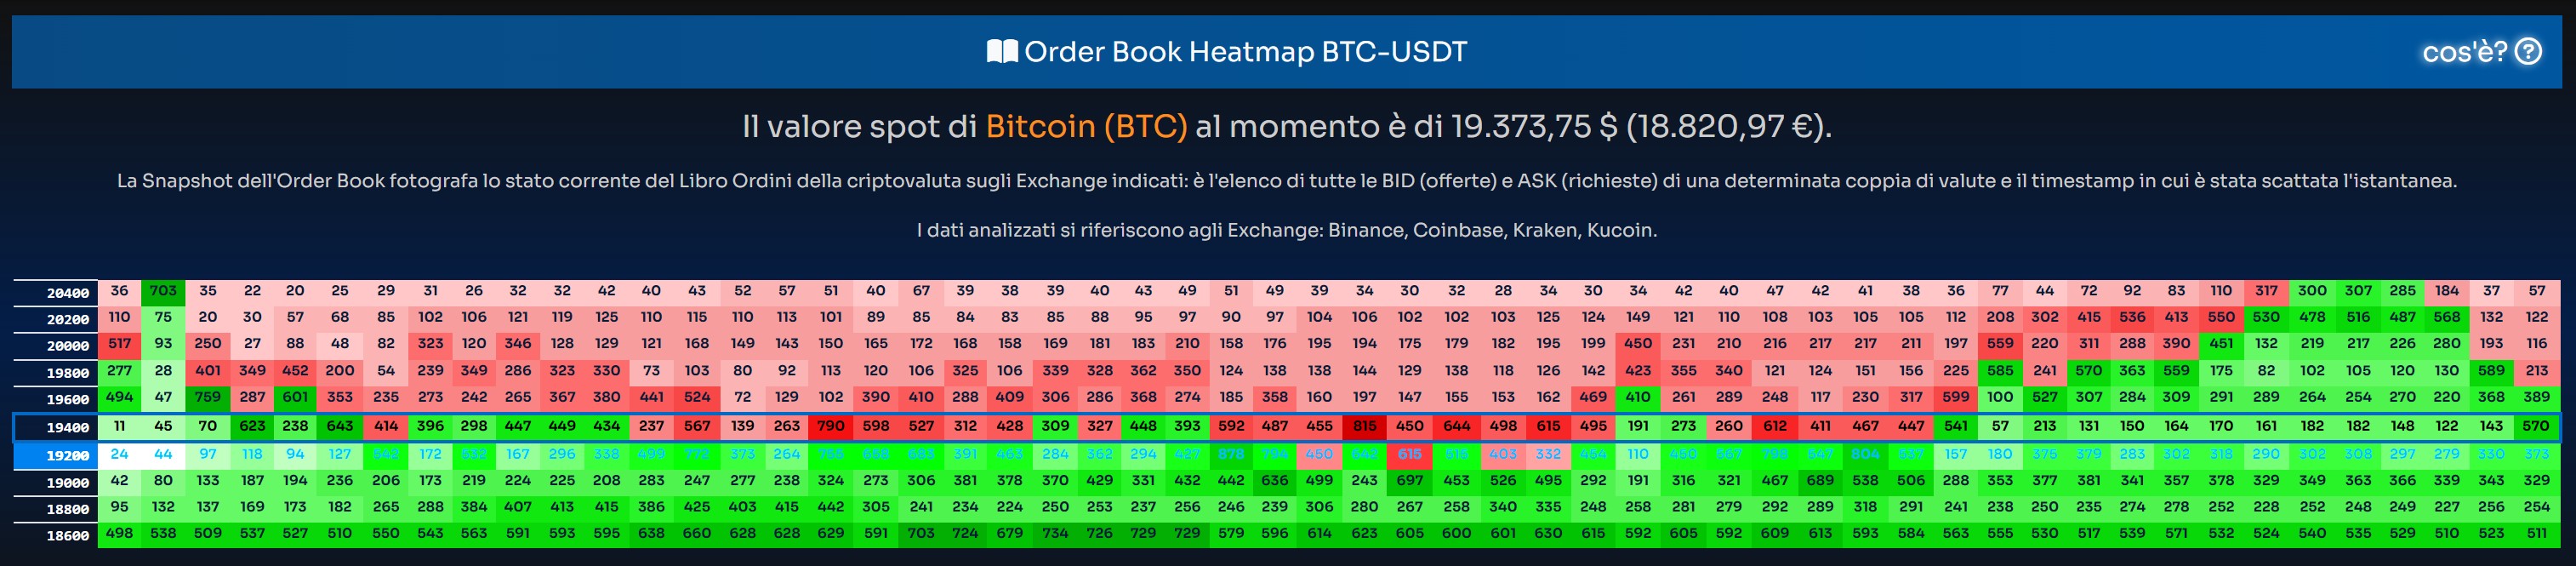 Order-Book-Heat-Map-Bitcoin-2022-07-05-150907.jpeg